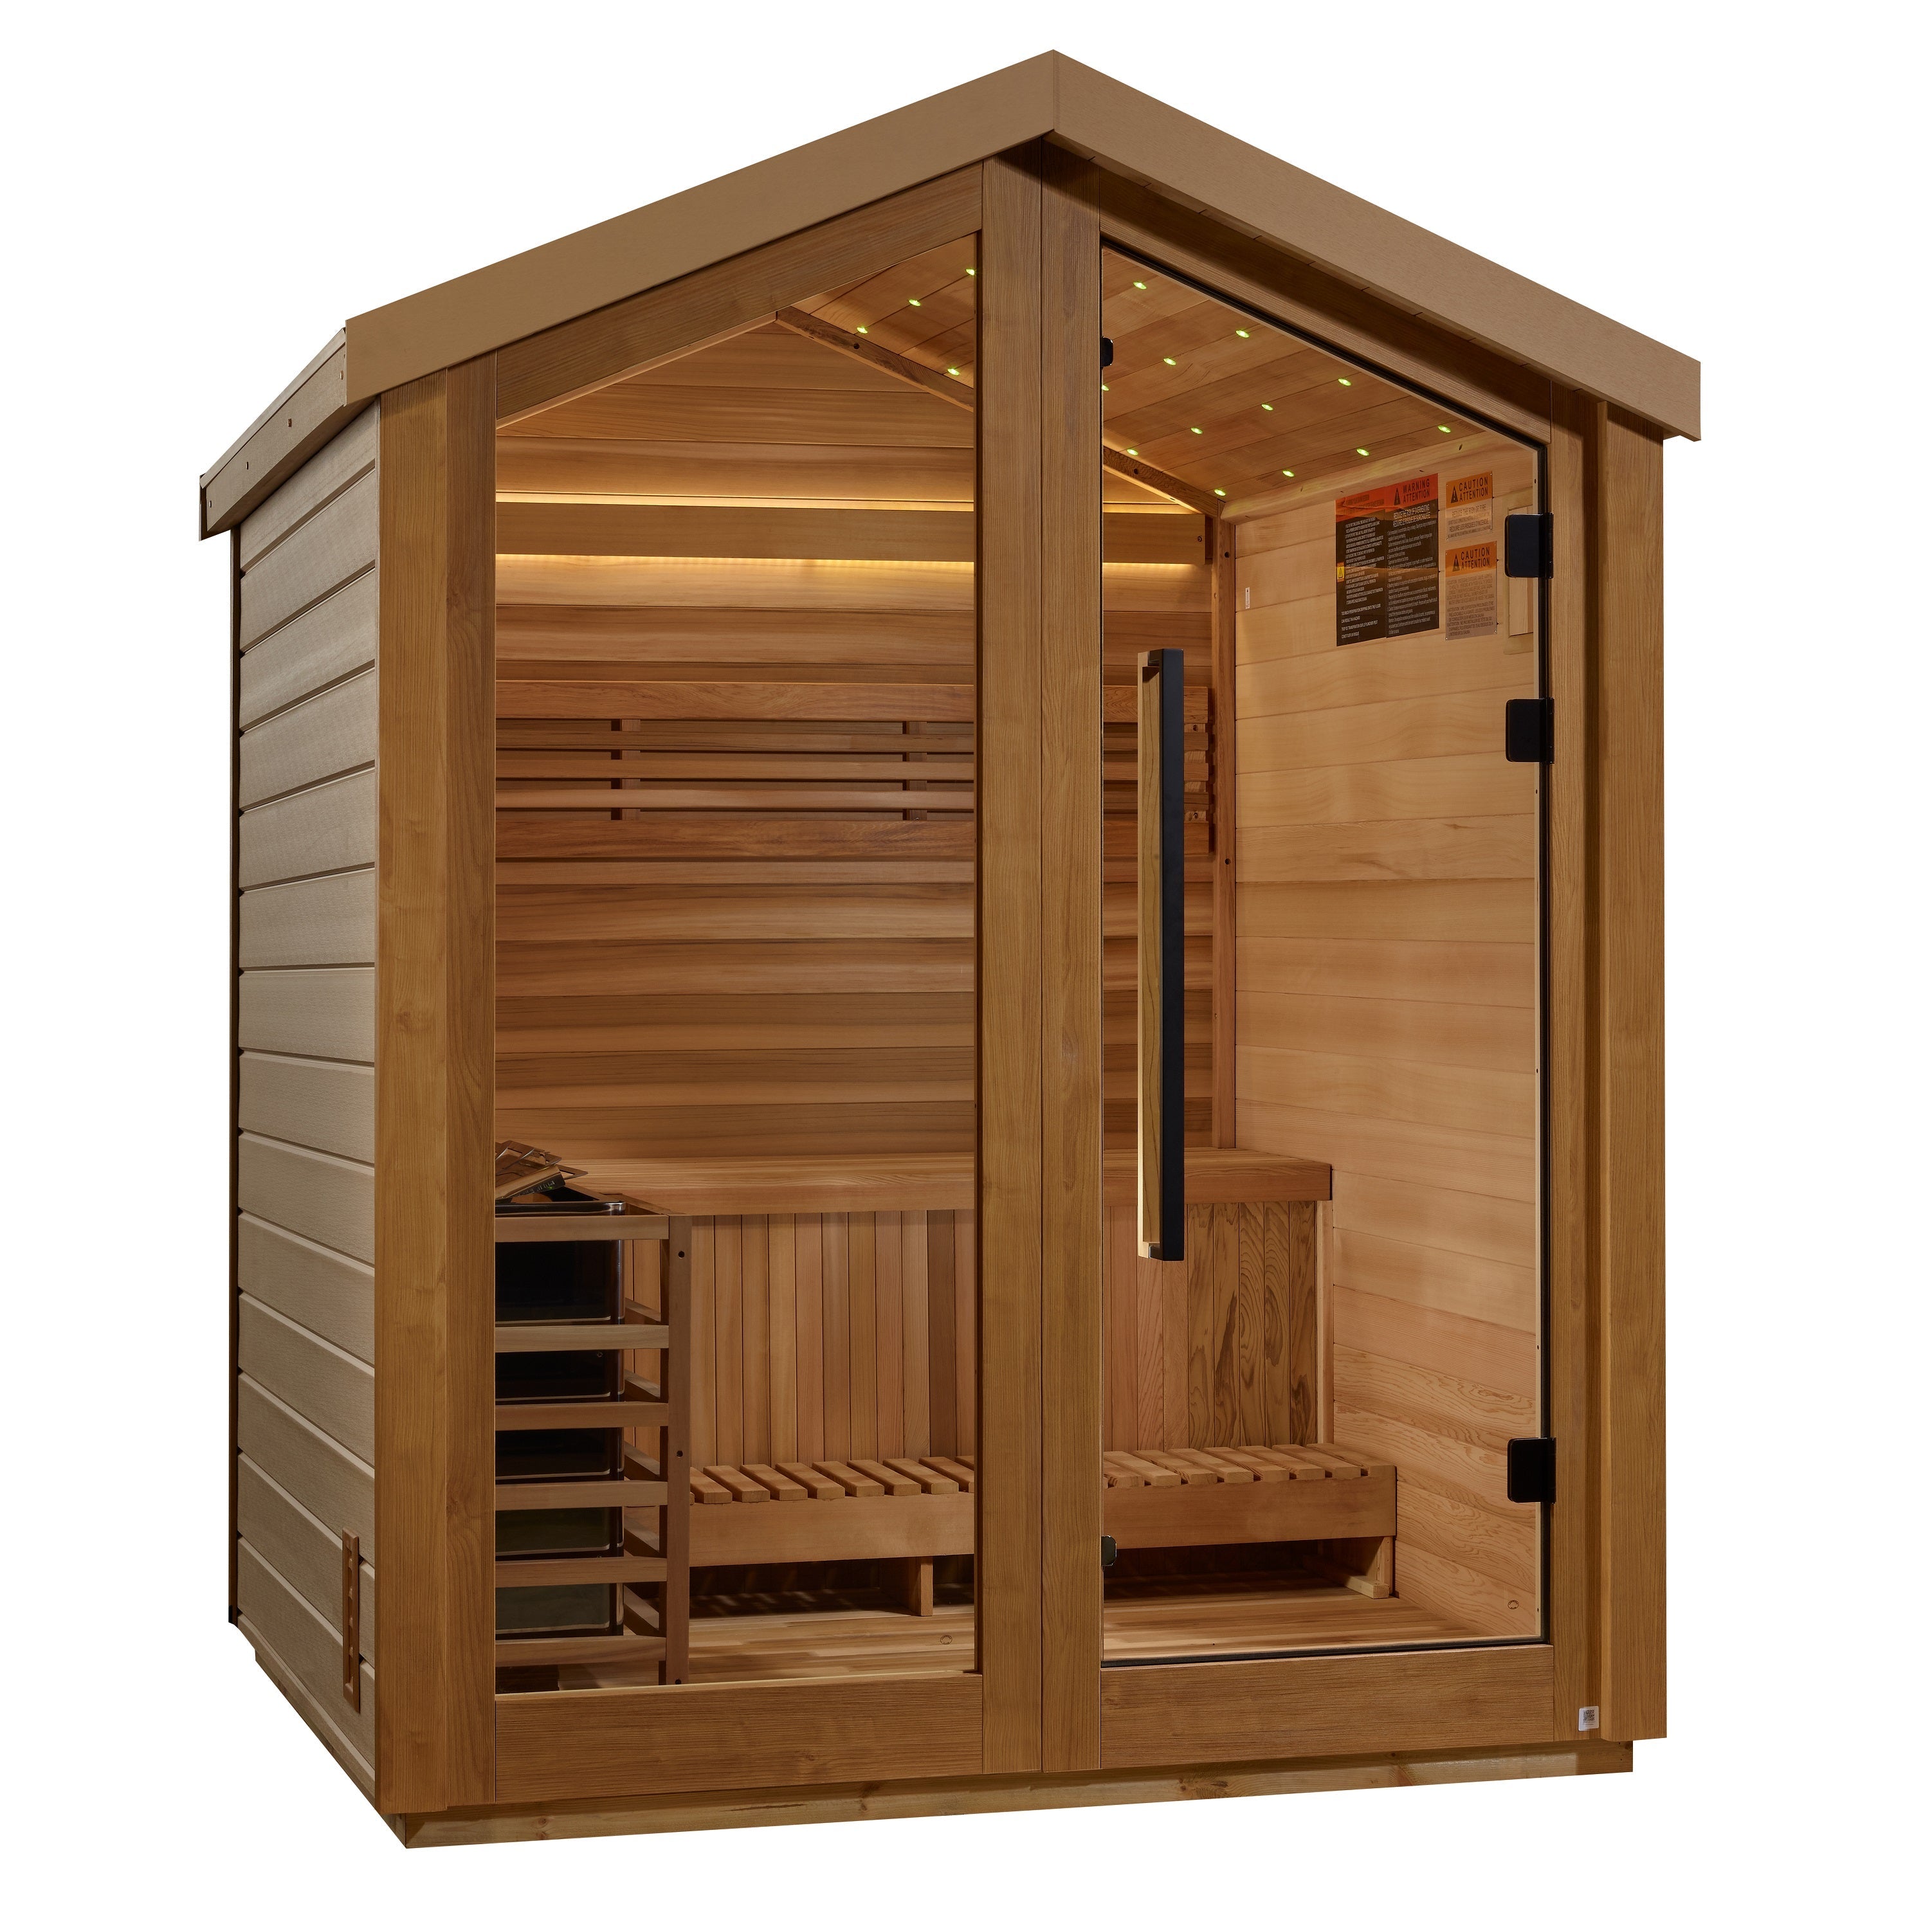 Golden Designs Savonlinna 3 Person Outdoor Traditional Sauna  Golden Designs Saunas Default Title  